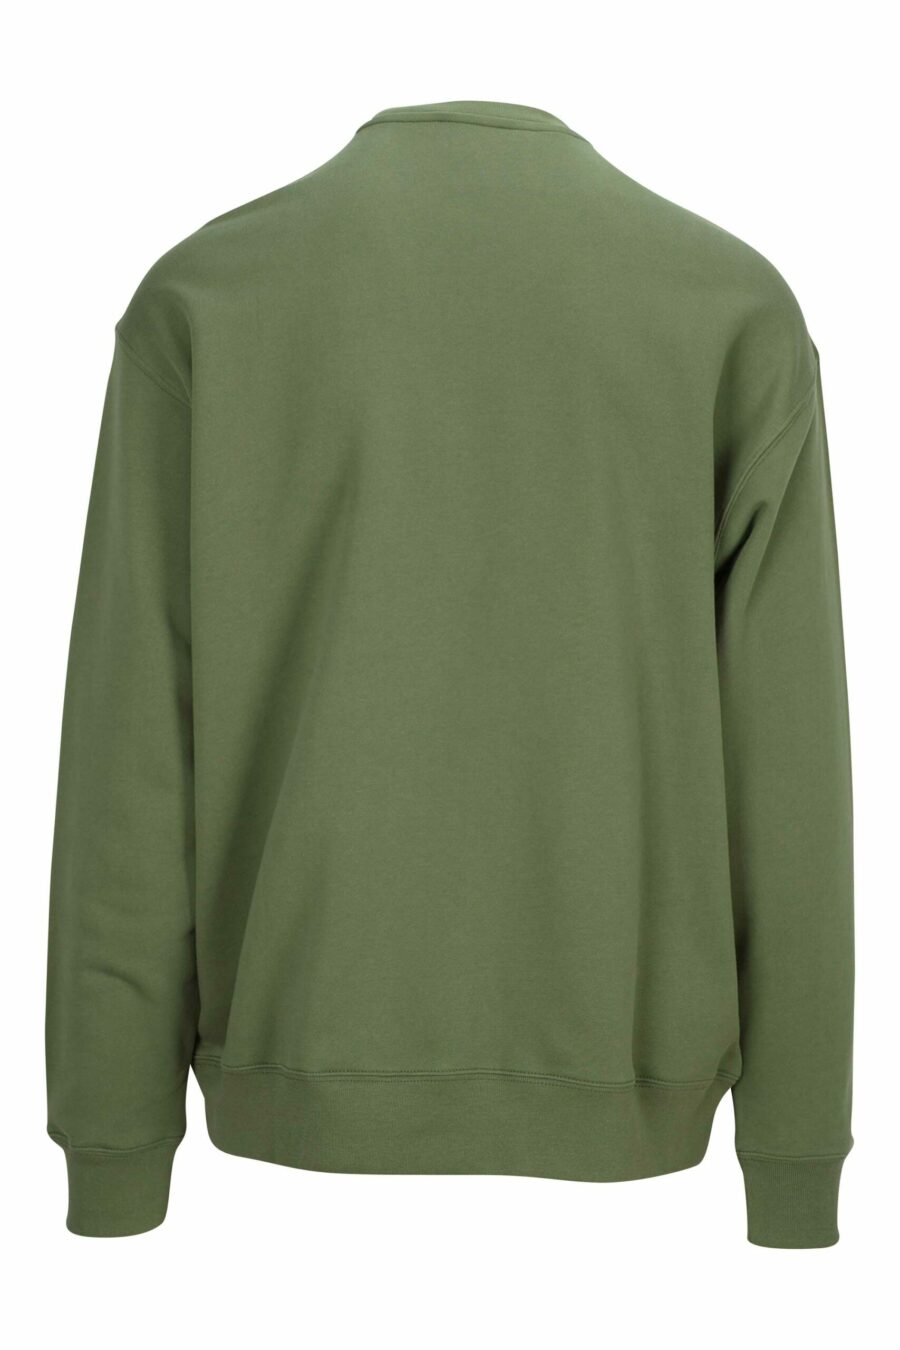 Sweat-shirt vert militaire avec maxilogo "teddy" noir - 889316852639 à l'échelle 1